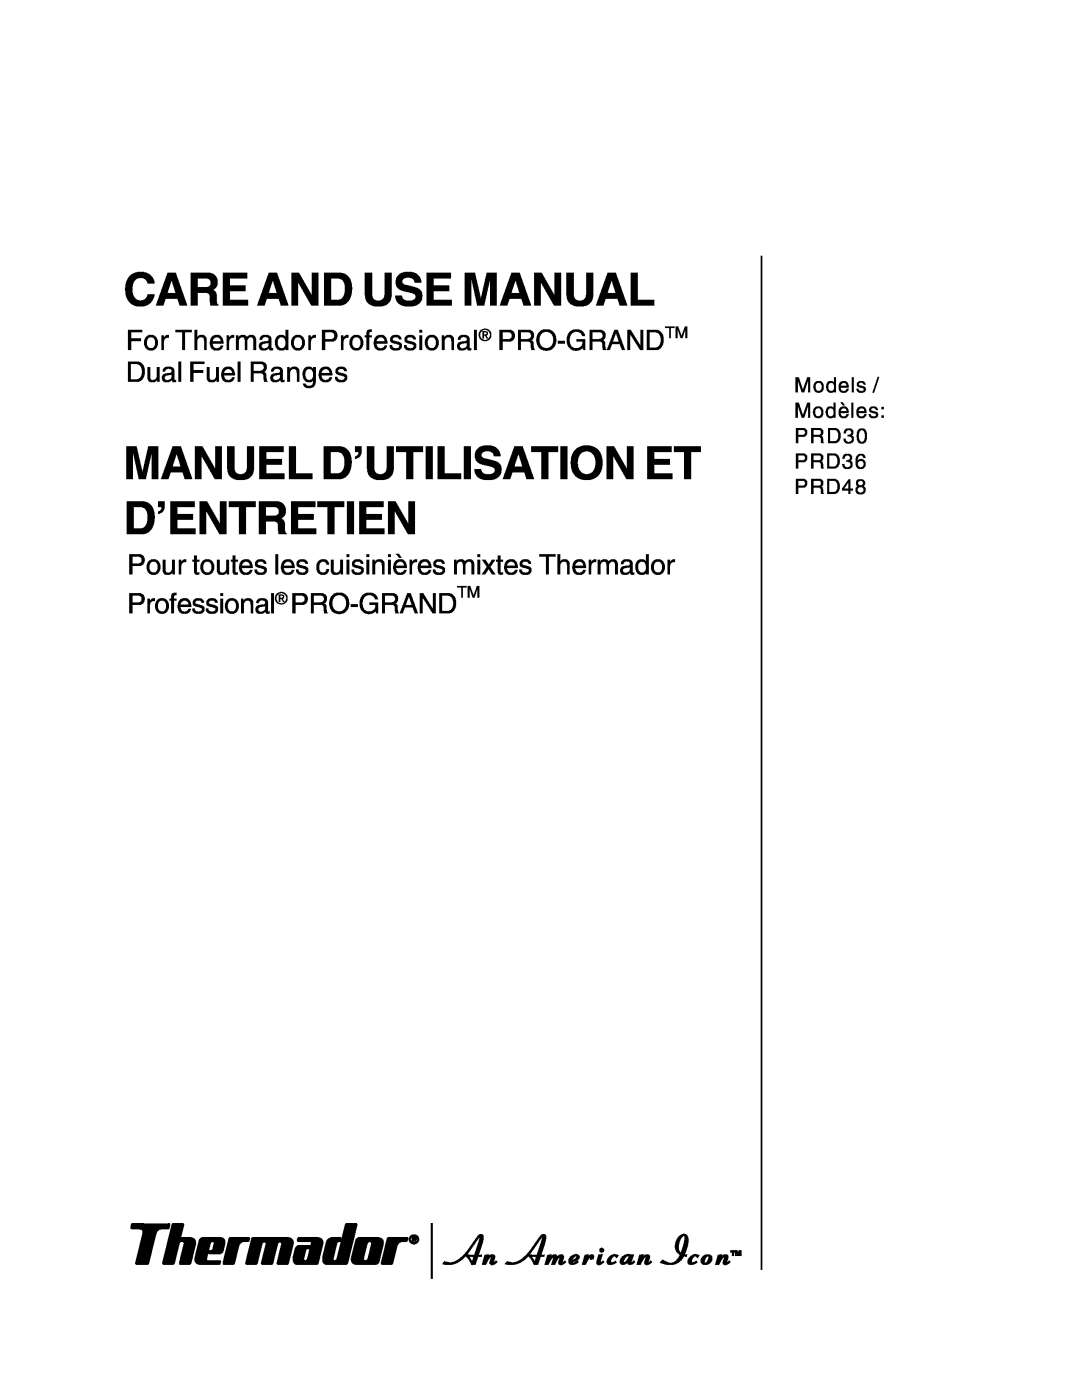 Thermador PRD36, PRD48, PRD30 manuel dutilisation Care And Use Manual, Manuel D’Utilisation Et D’Entretien 